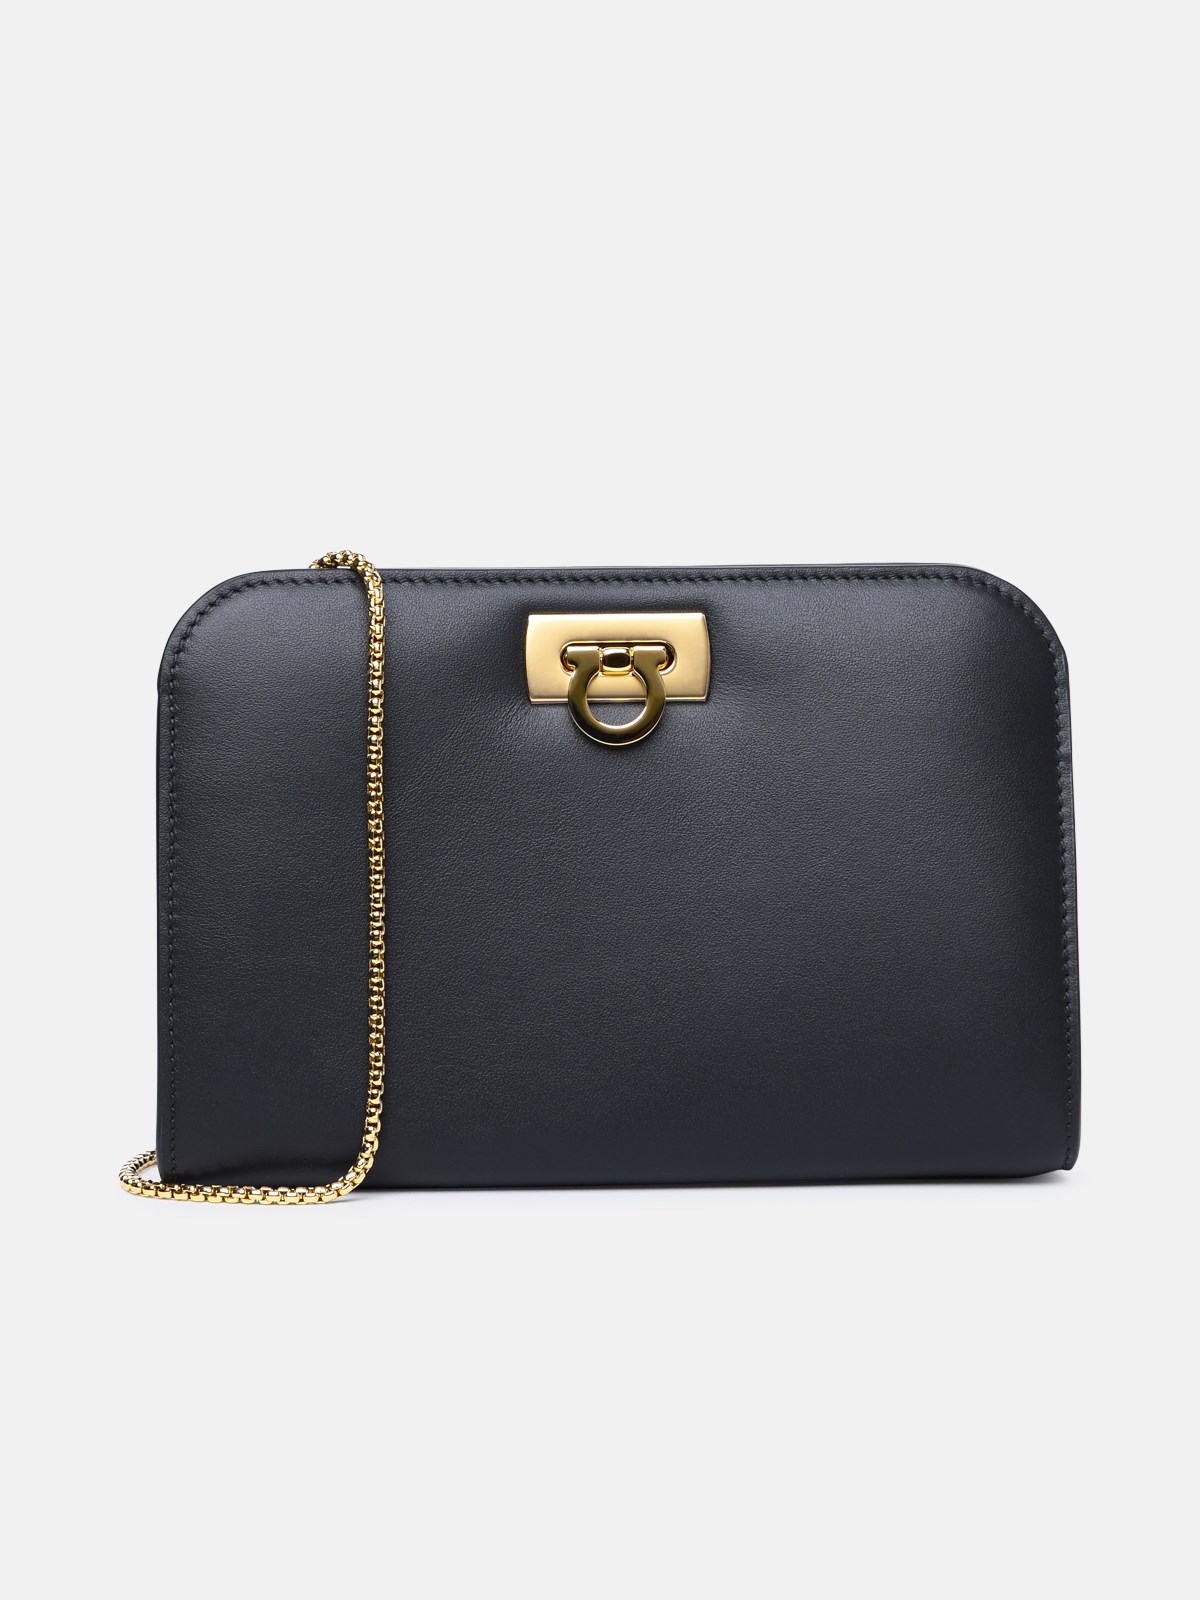 Ferragamo 'diana' Mini Clutch Bag In Black Calf Leather